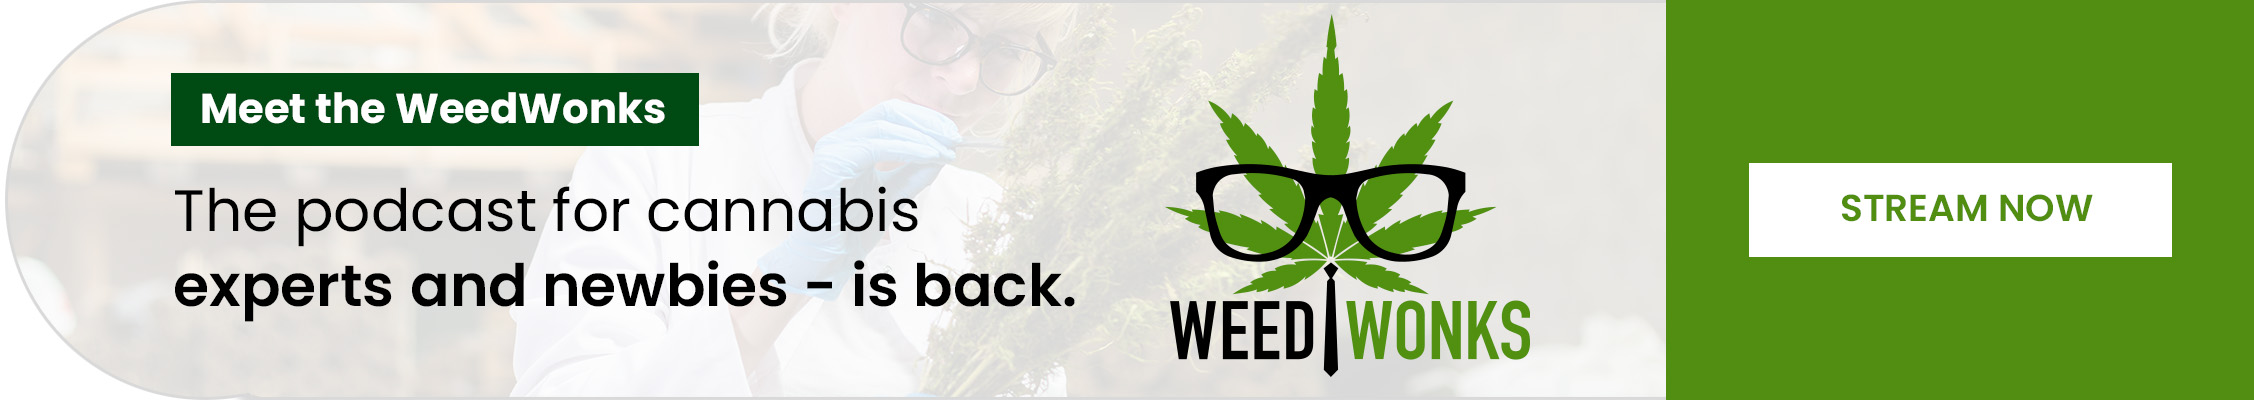 Meet the WeedWonks_